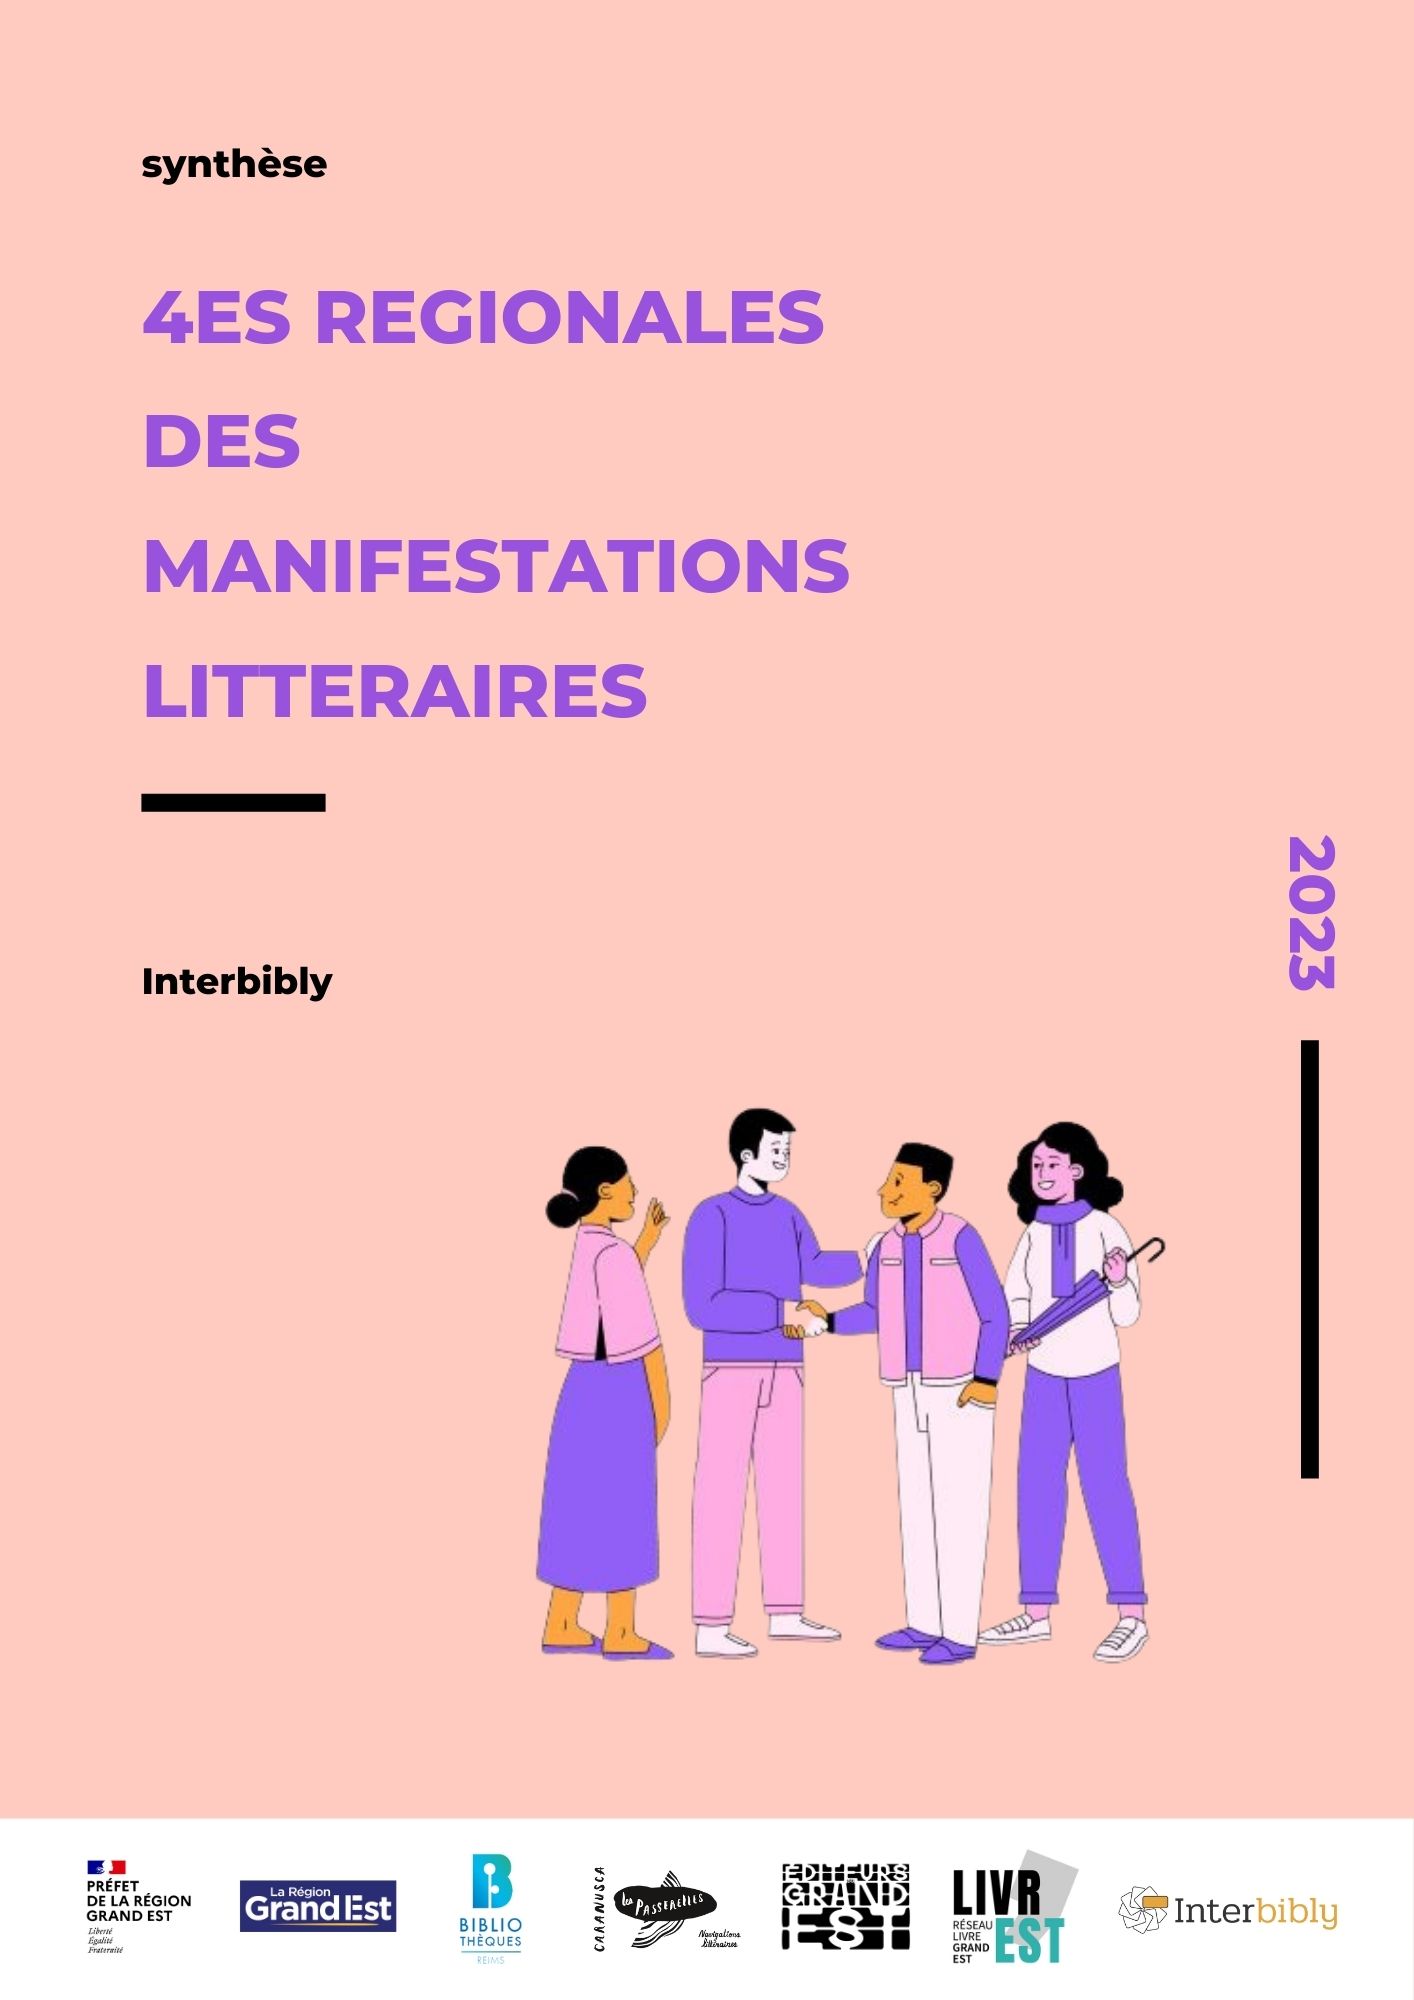 4es Régionales des manifestations littéraires en Grand Est // découvrez la synthèse